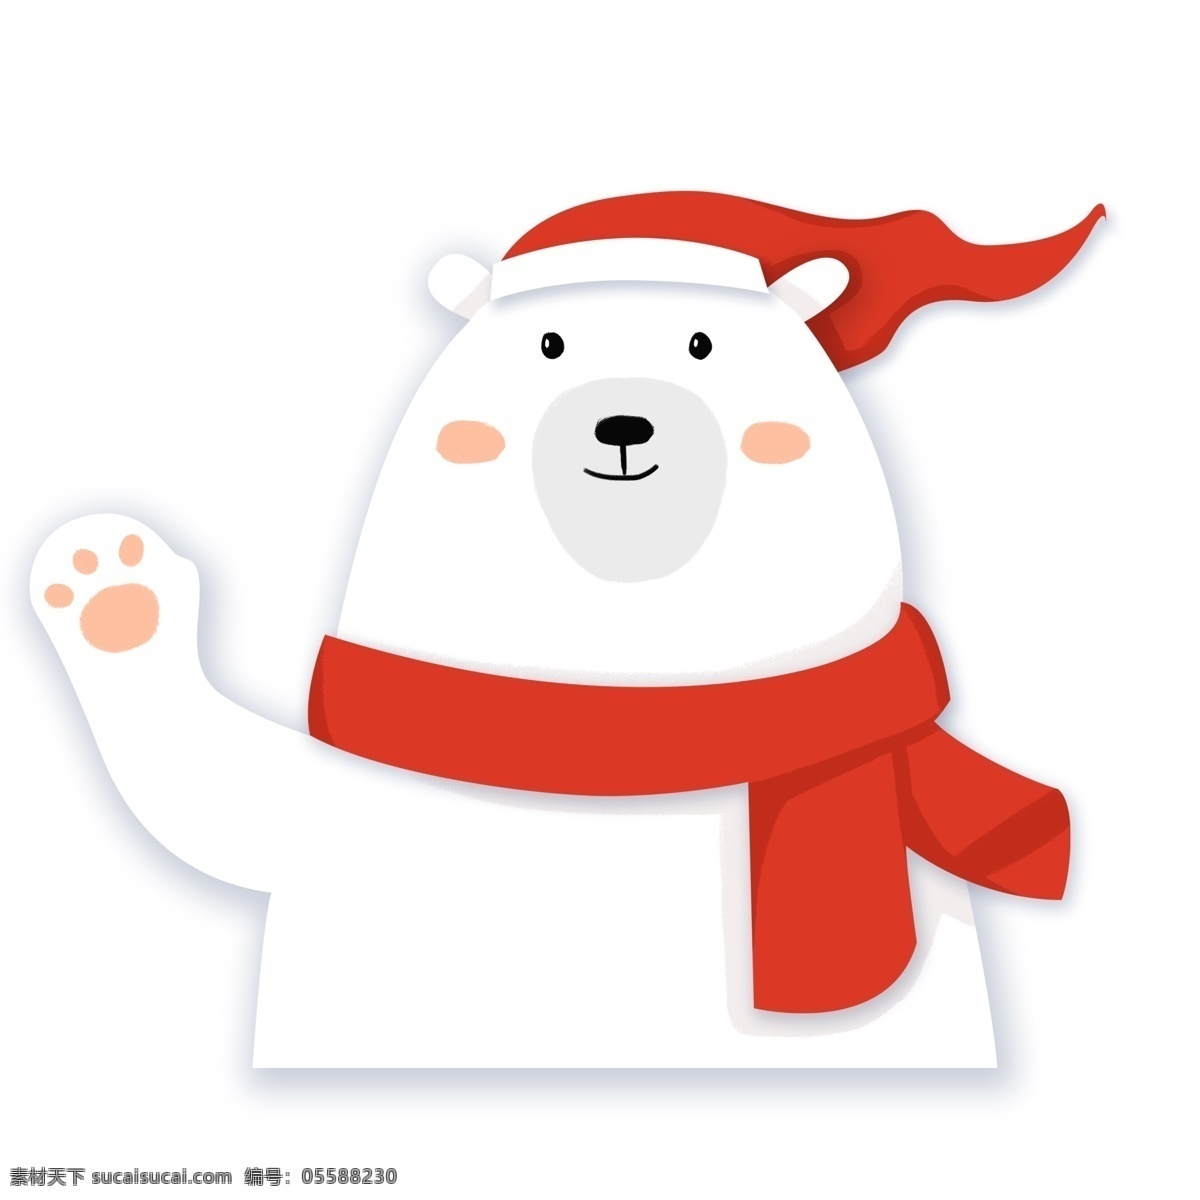 扁平化 卖 萌 打招呼 北极熊 卡通 圣诞节 插画 剪纸风 卖萌 白熊